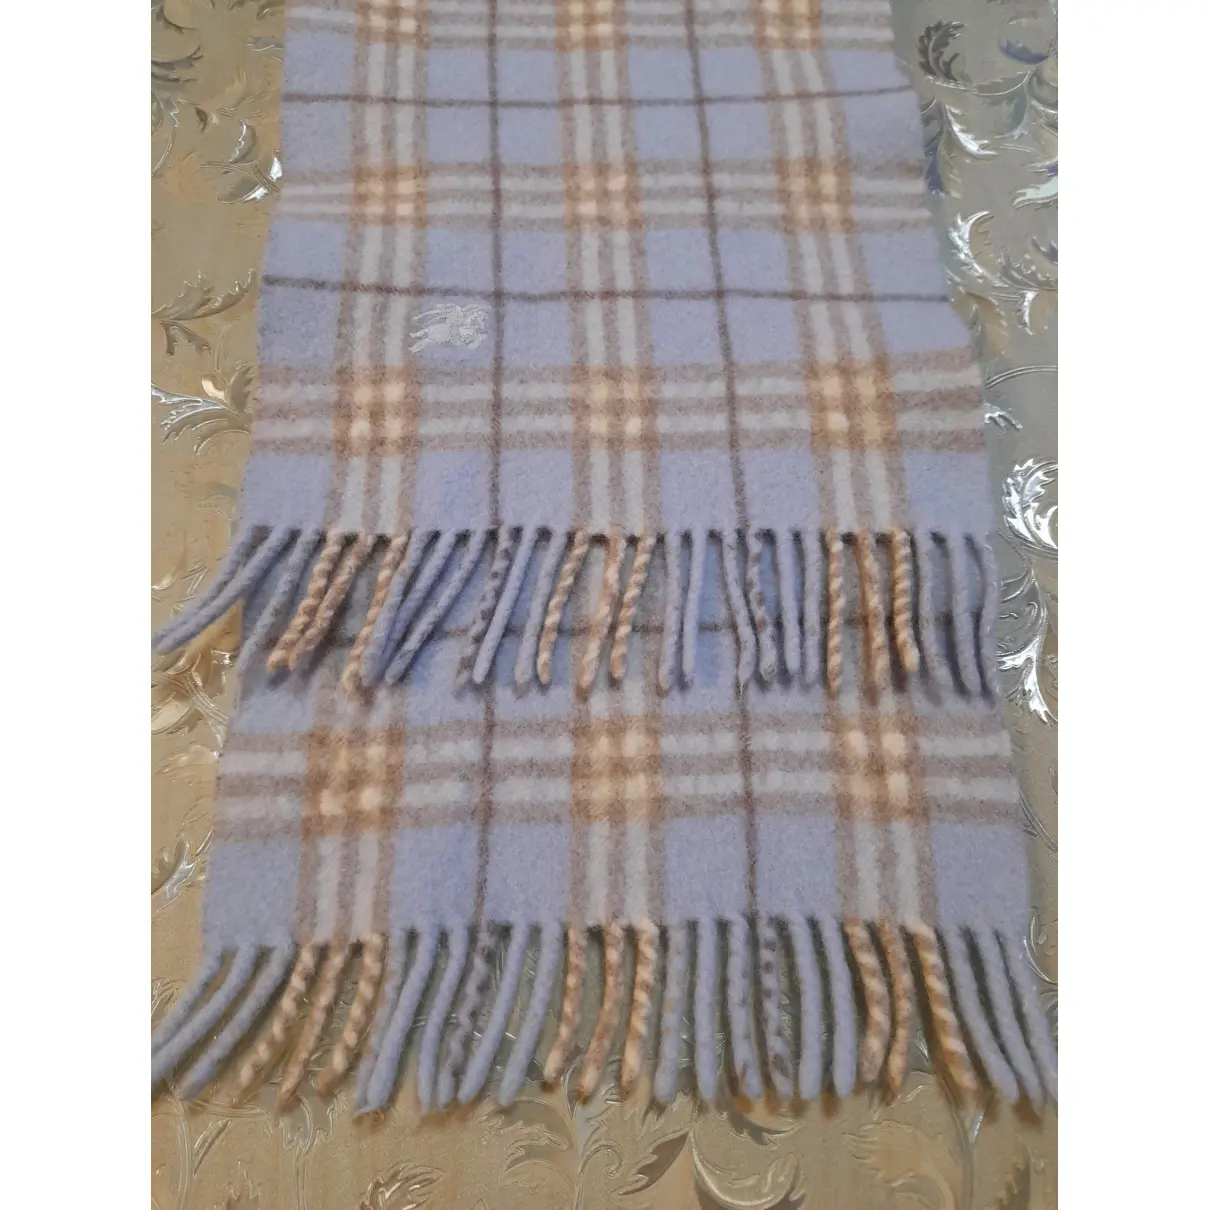 Buy Burberry Wool scarf online